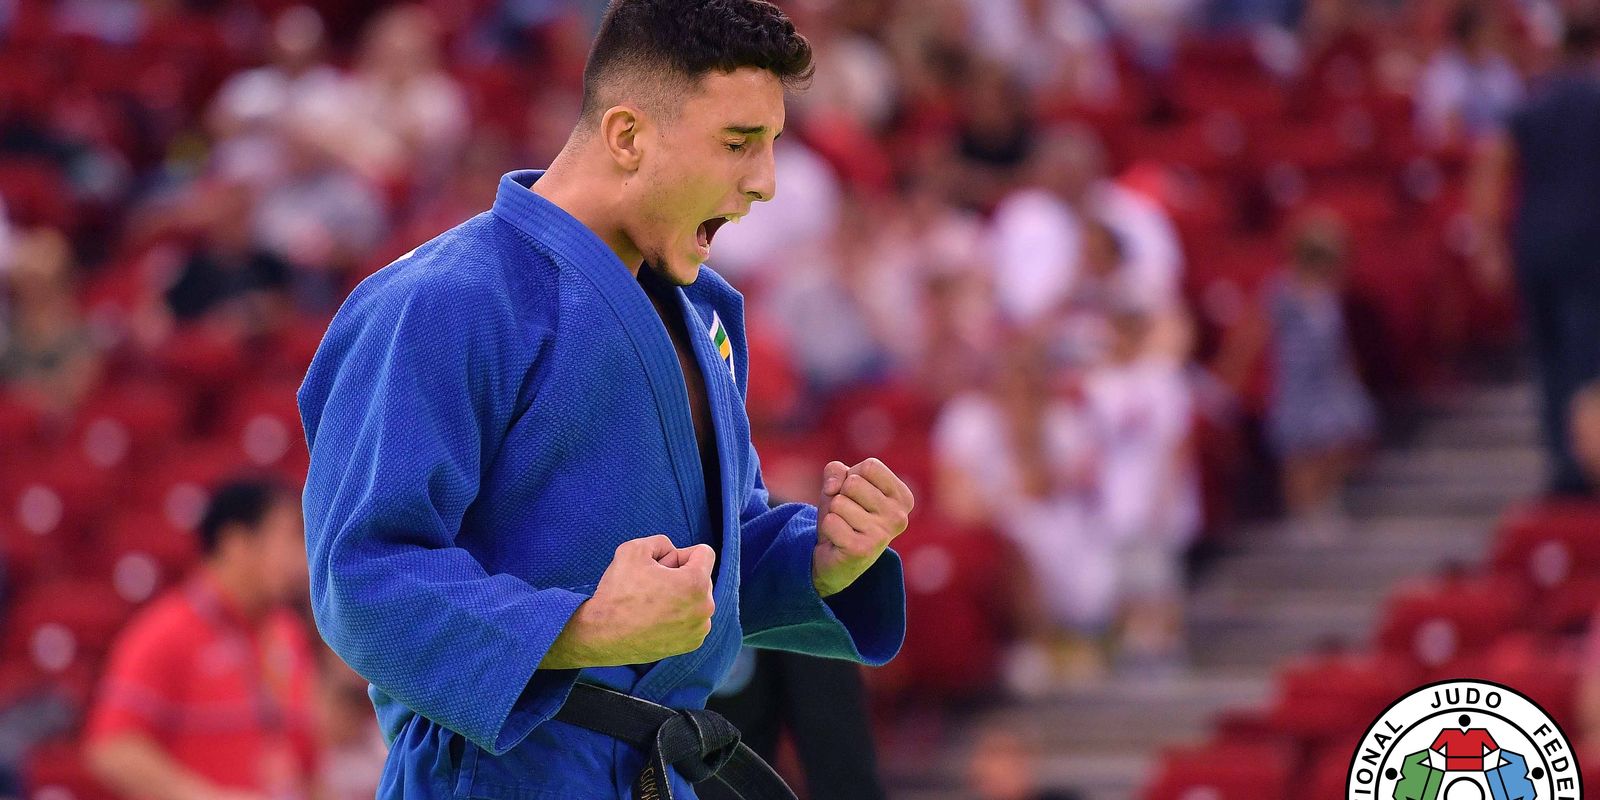 Judo : Guilherme Schmidt remporte l’or en Grand Chelem.  Budapest